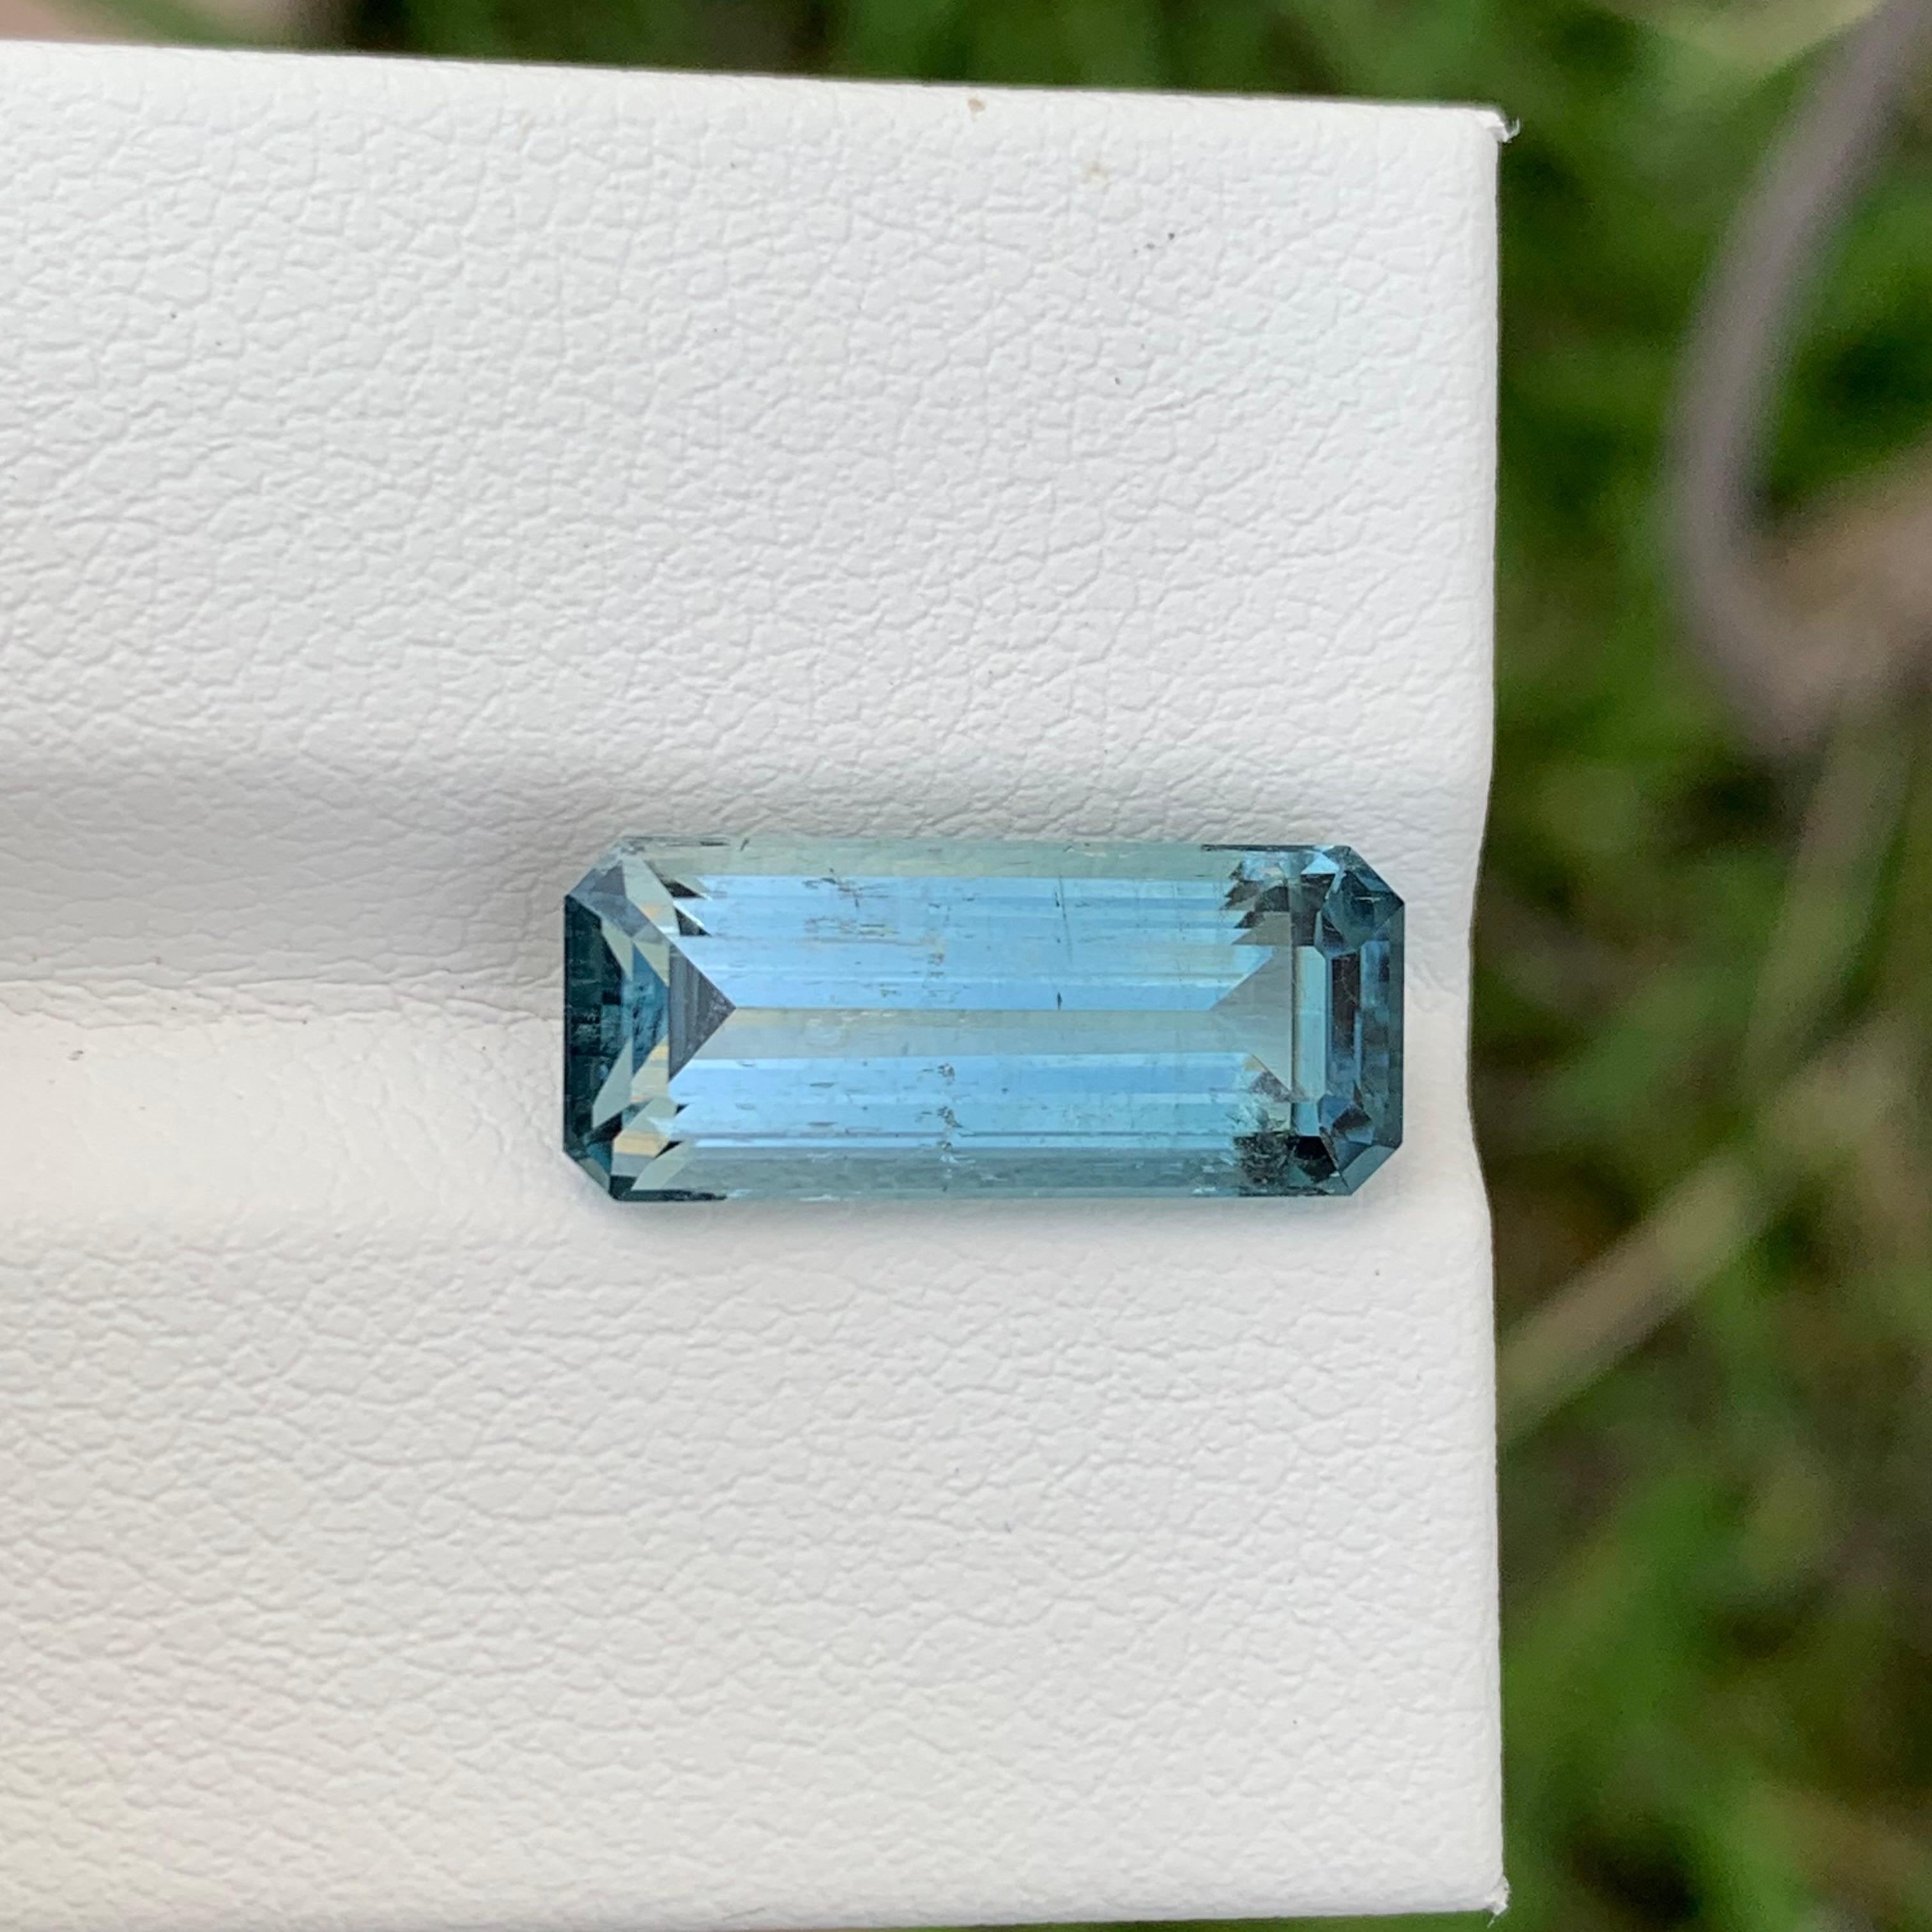 Rare Color 5.05 Carat Natural Loose Blue Seafoam Tourmaline Emerald Shape Gem For Sale 4